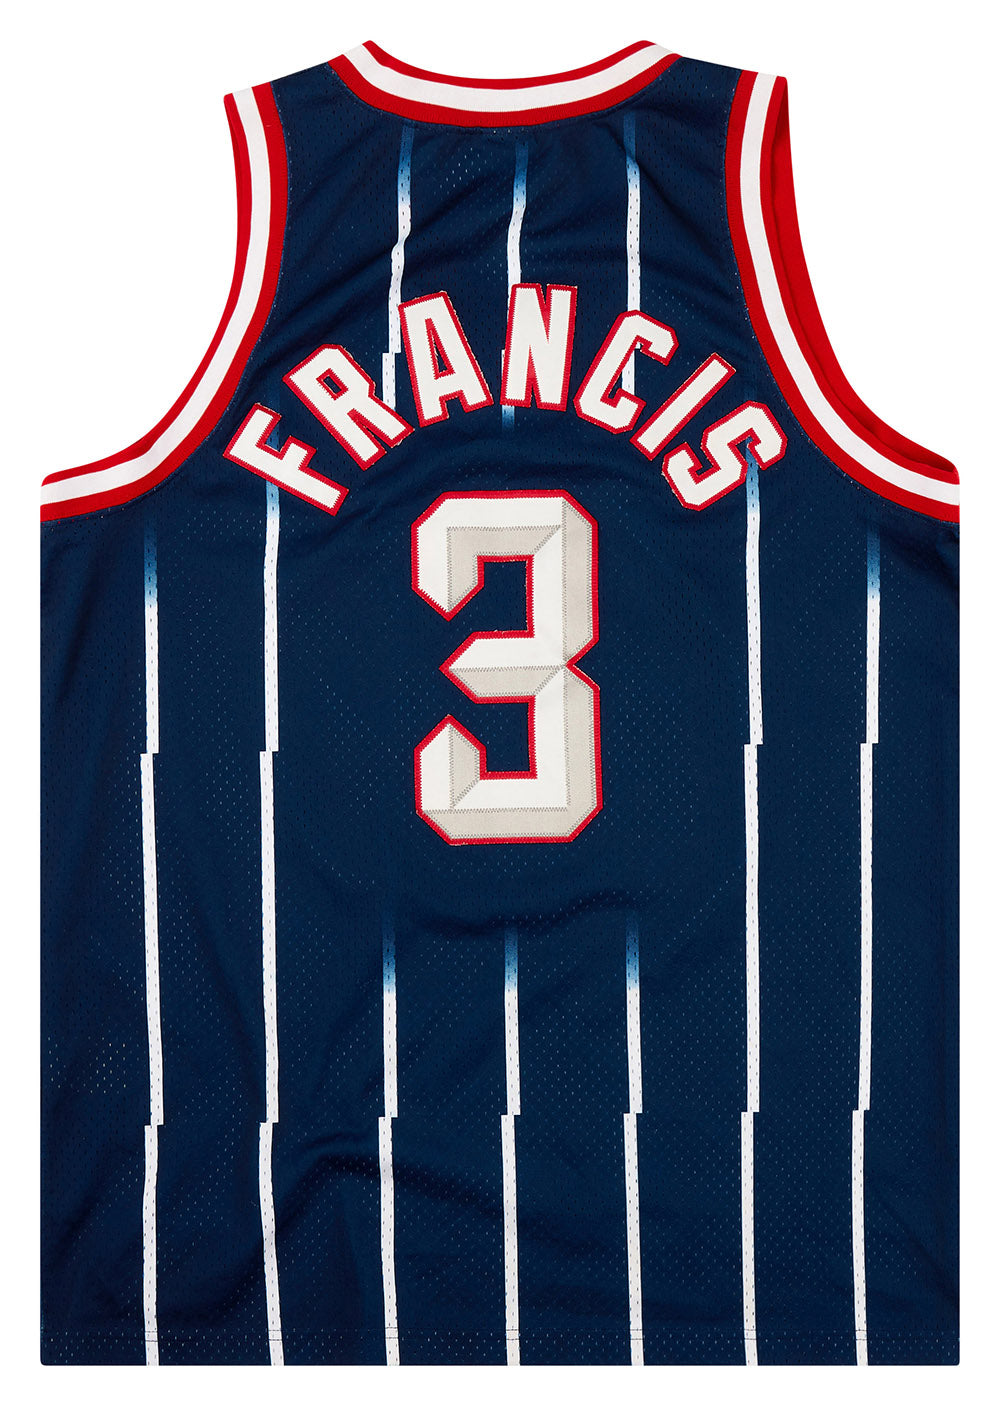 Vintage Houston Rockets NIKE Steve Francis Stitched Jersey 